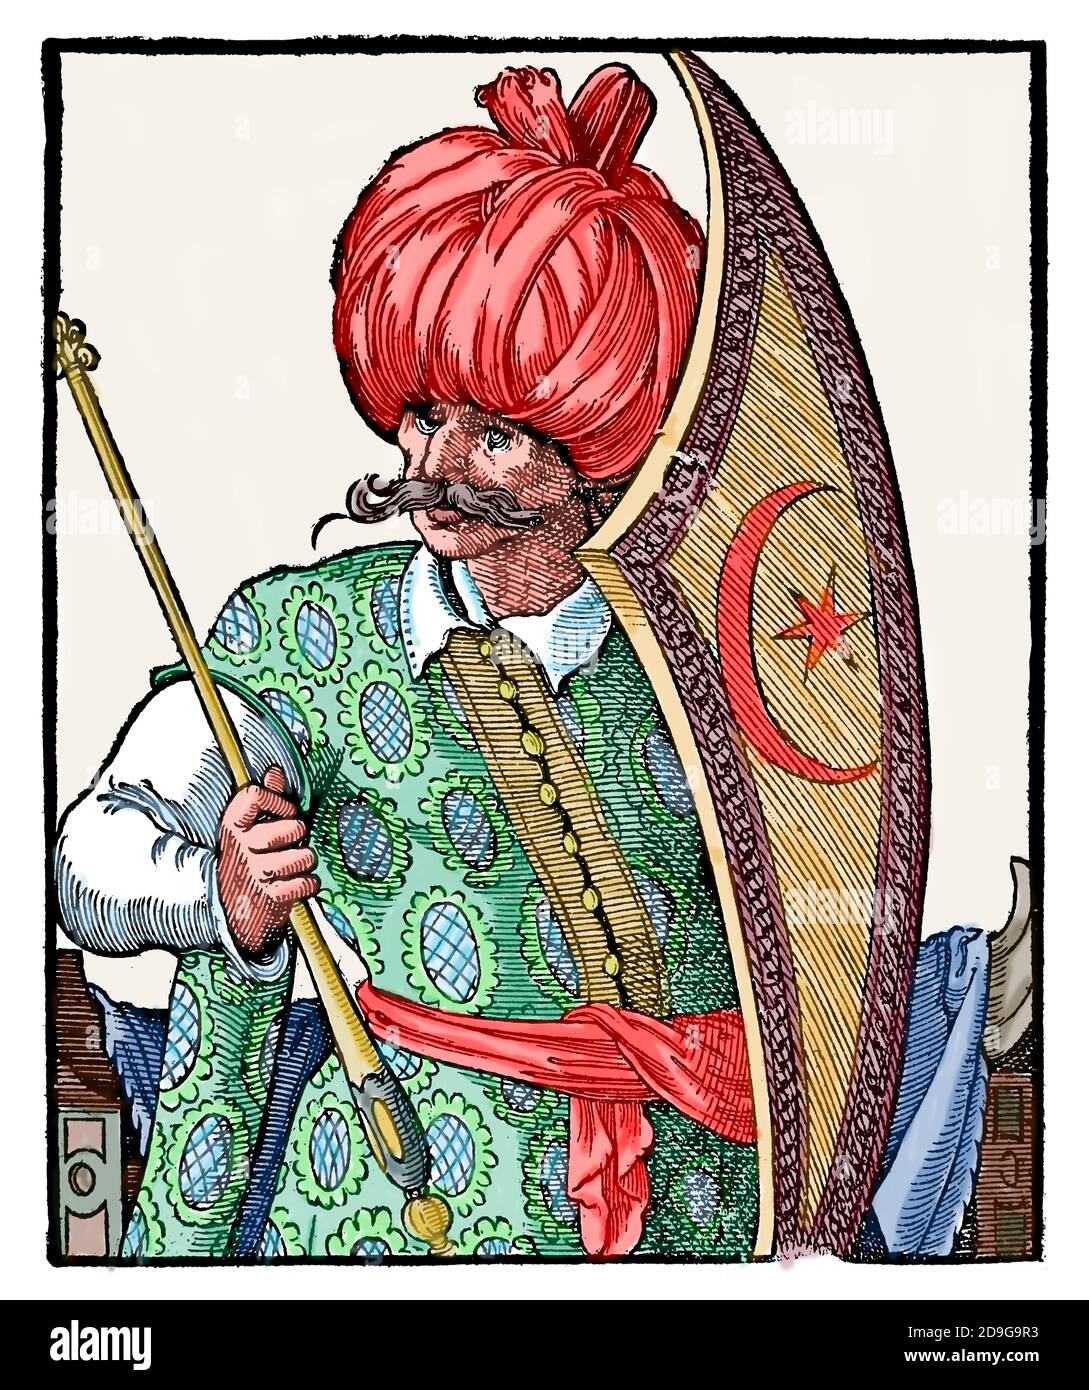 L'ère moderne. Empire ottoman. xvie siècle. Turk avec bouclier et sceptre. Gravure de Jost Amman, XVIe siècle. Coloration ultérieure. Banque D'Images